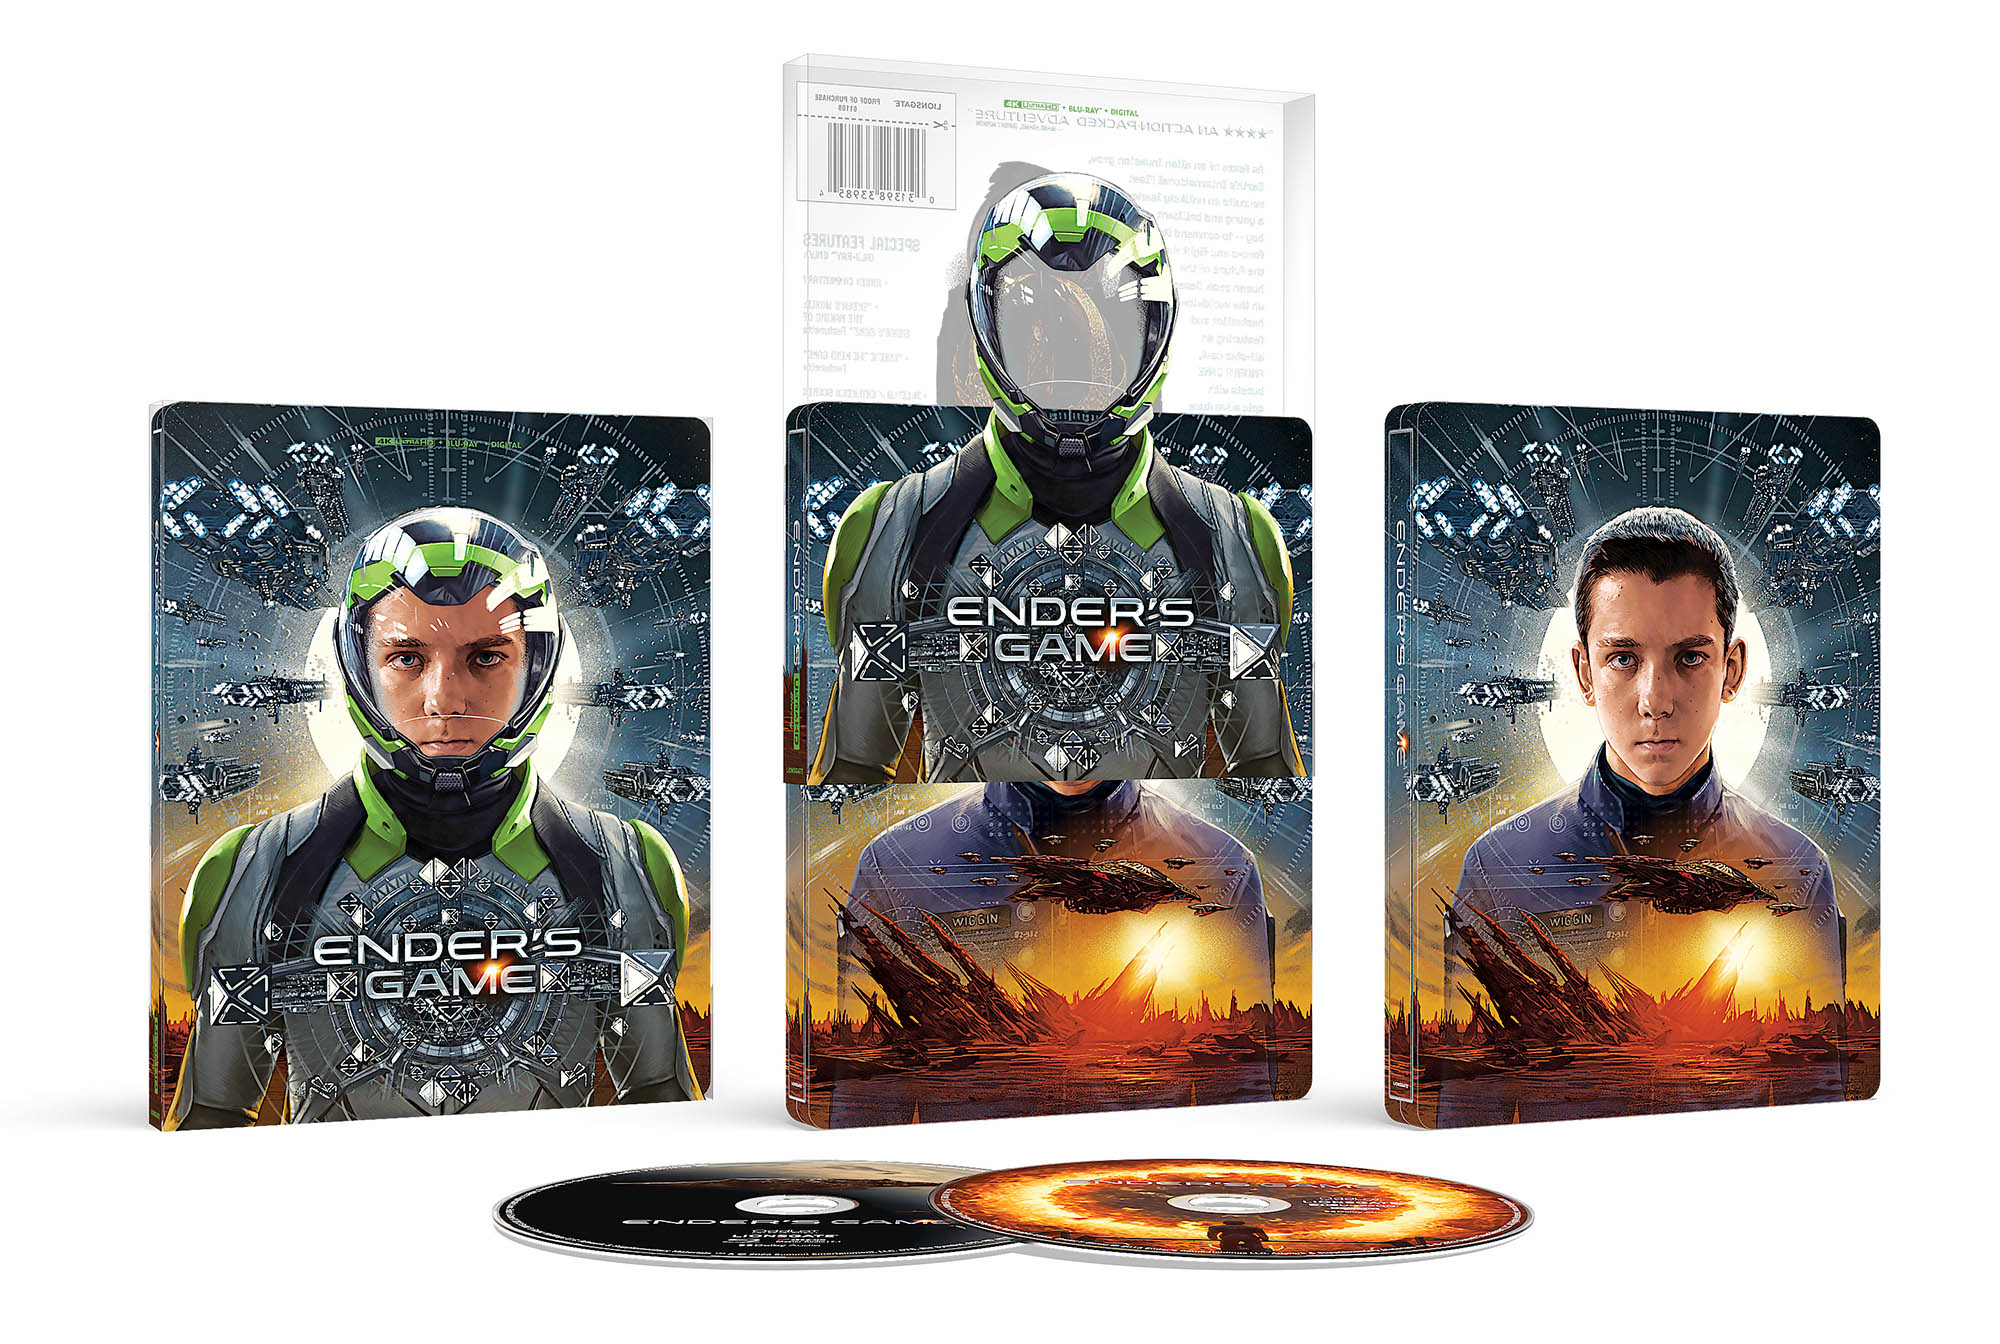 Enders Game (2013) 4k Blu-ray SteelBook open